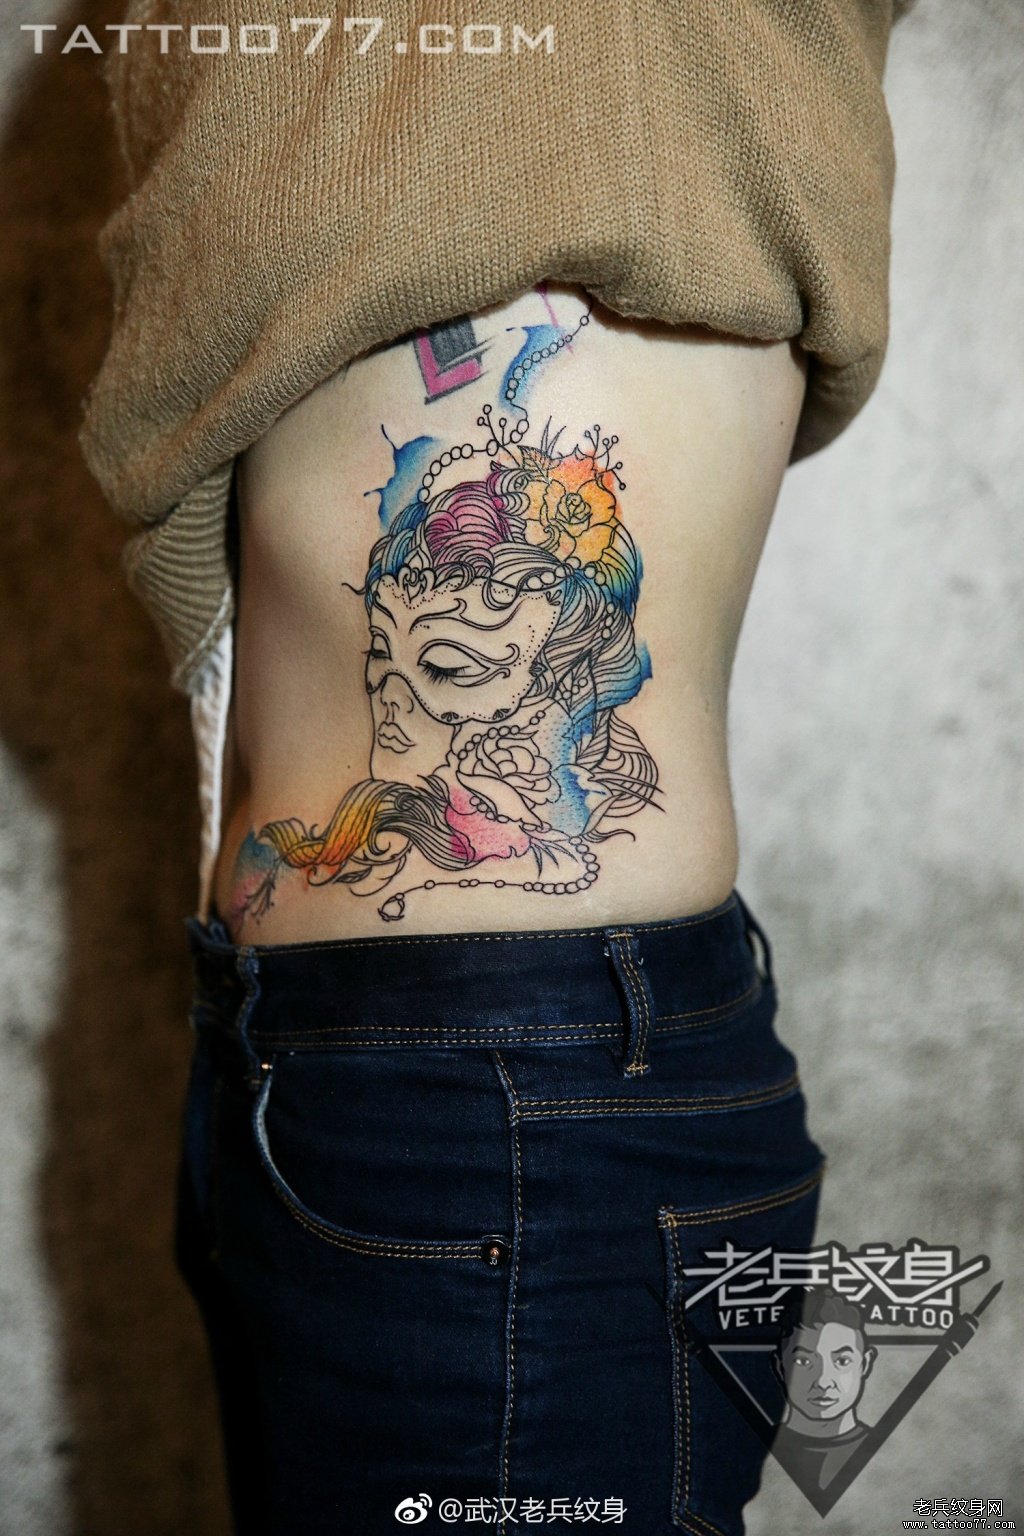 武汉女纹身师打造的侧腰面具美女纹身图案作品